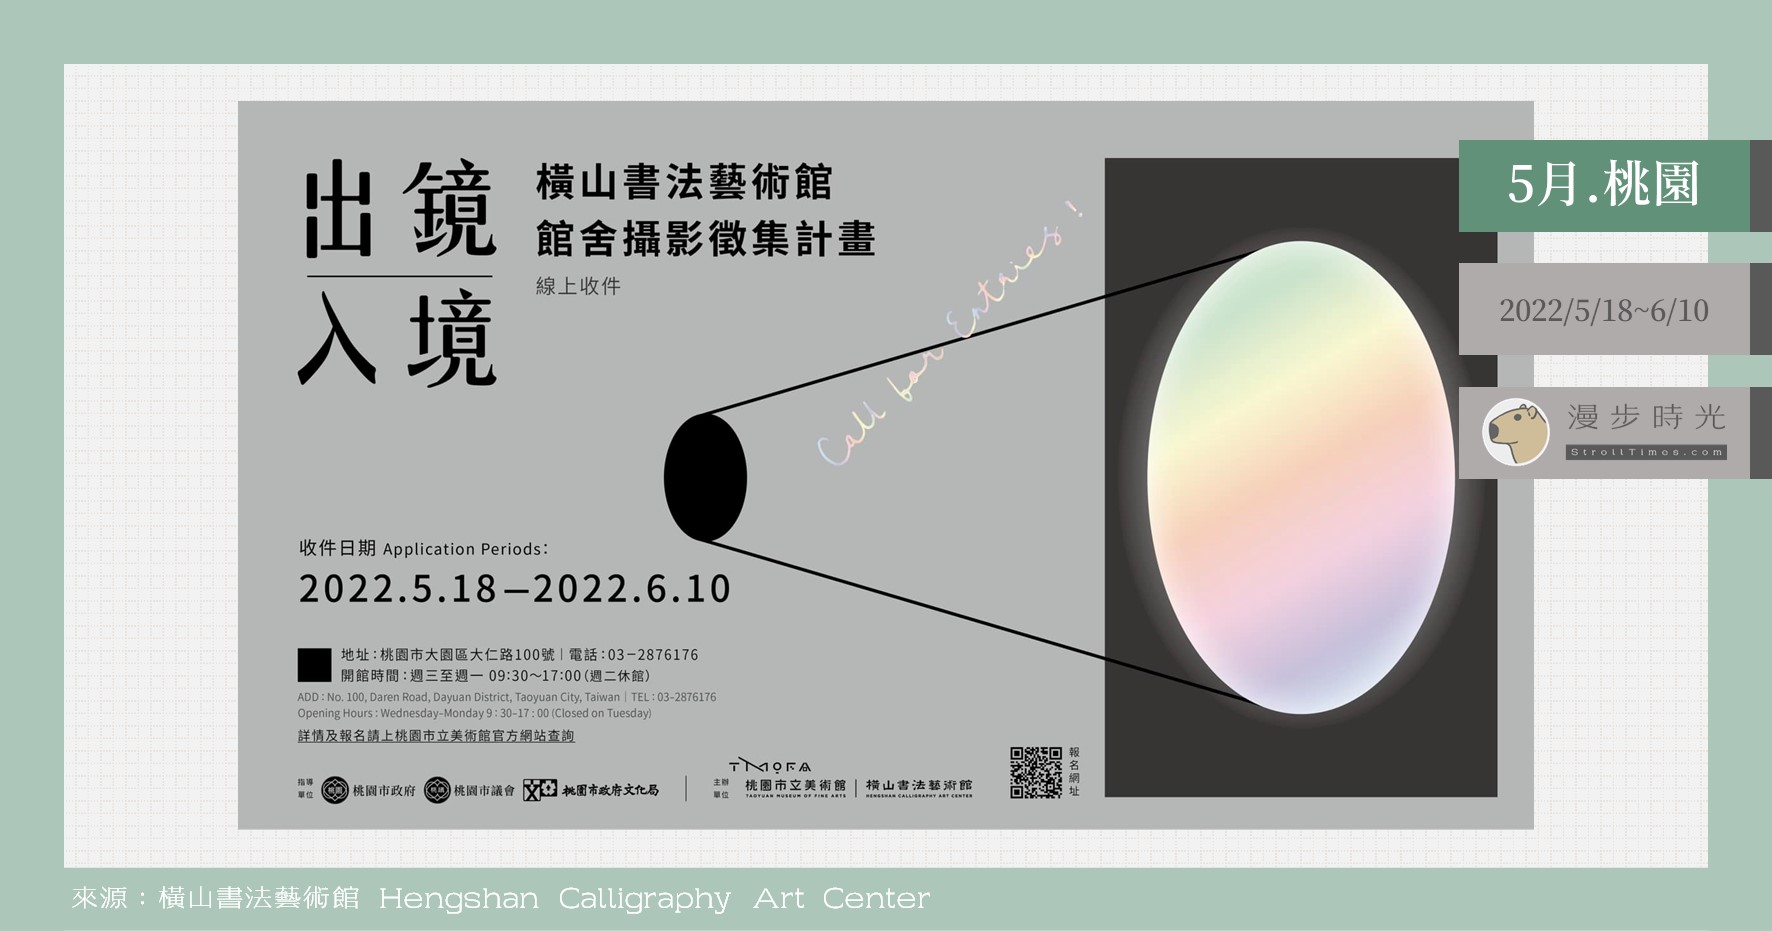 即刻募集！橫山書藝館「出鏡入境」攝影徵集，優選作品有機會印製成入場門票喔！ @漫步時光